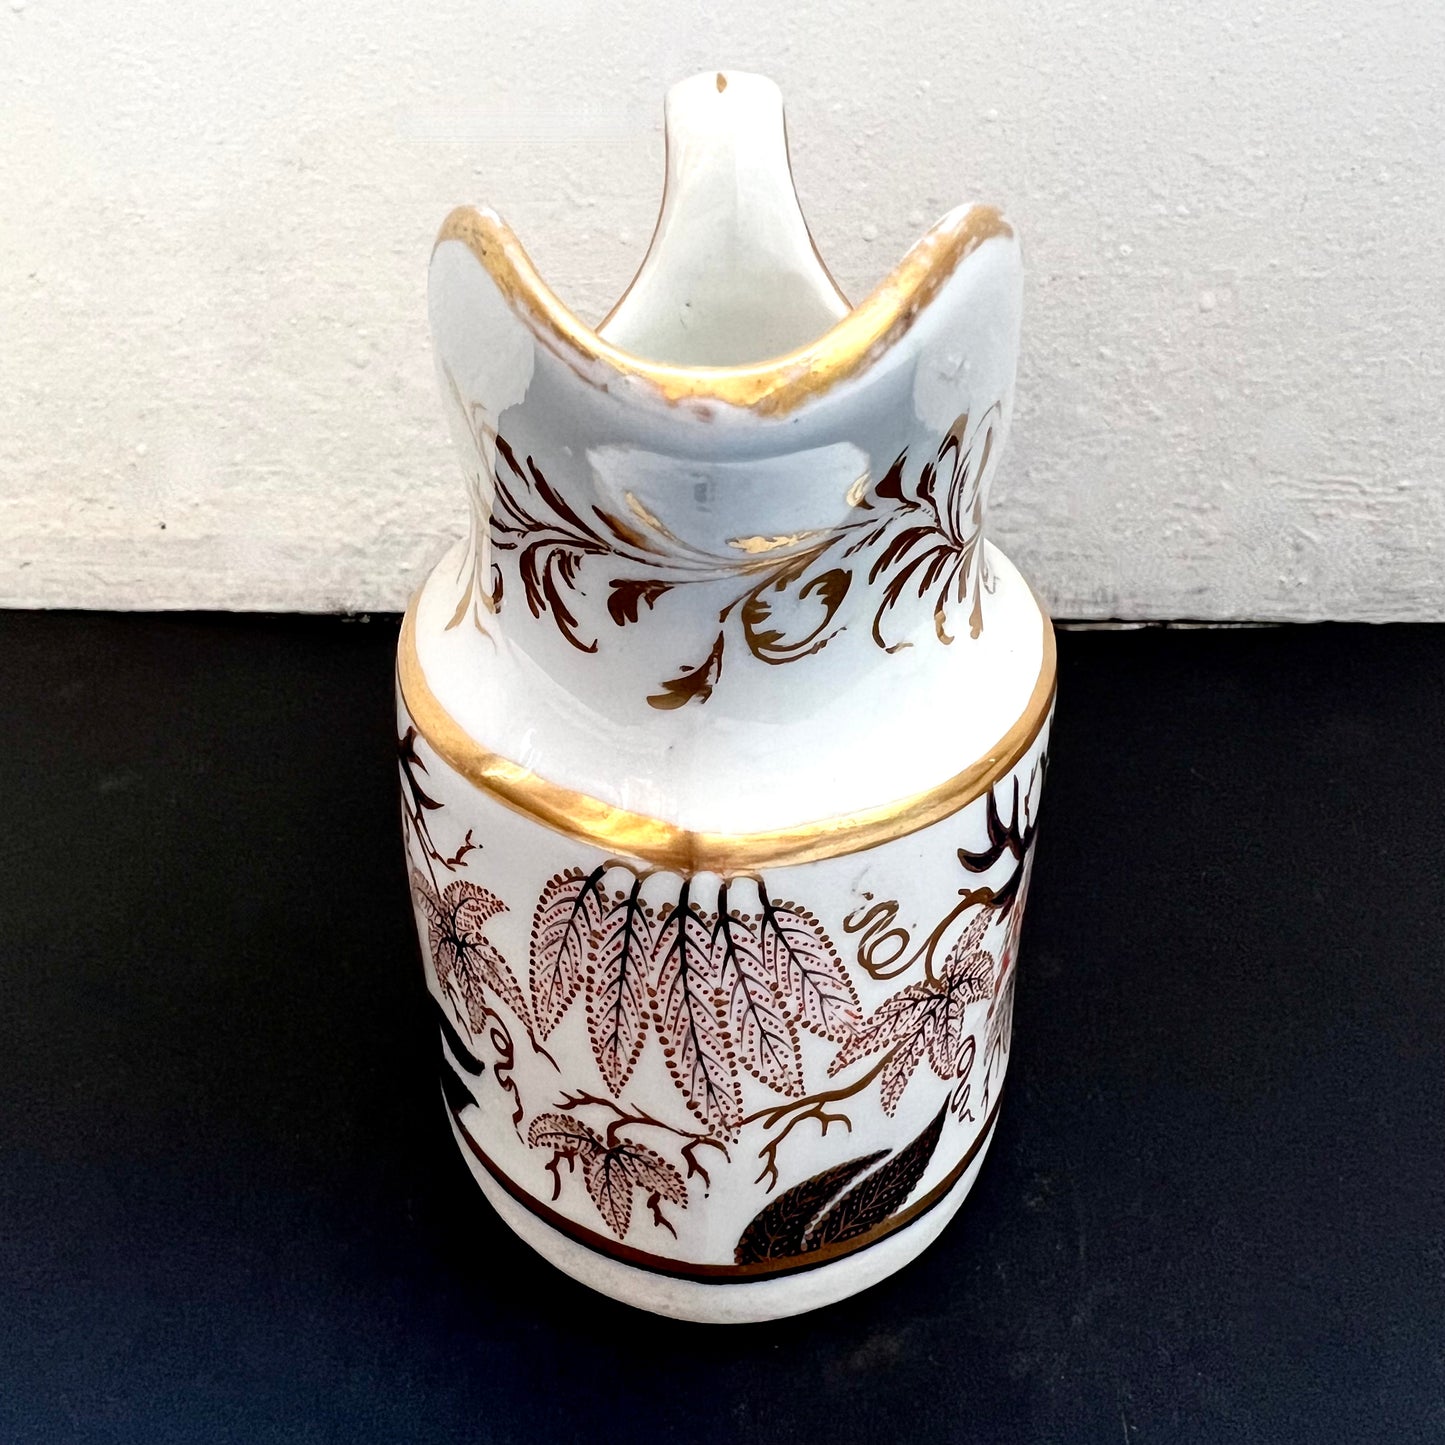 古董新霍尔伊万里牛奶壶/水罐 约 1800 年